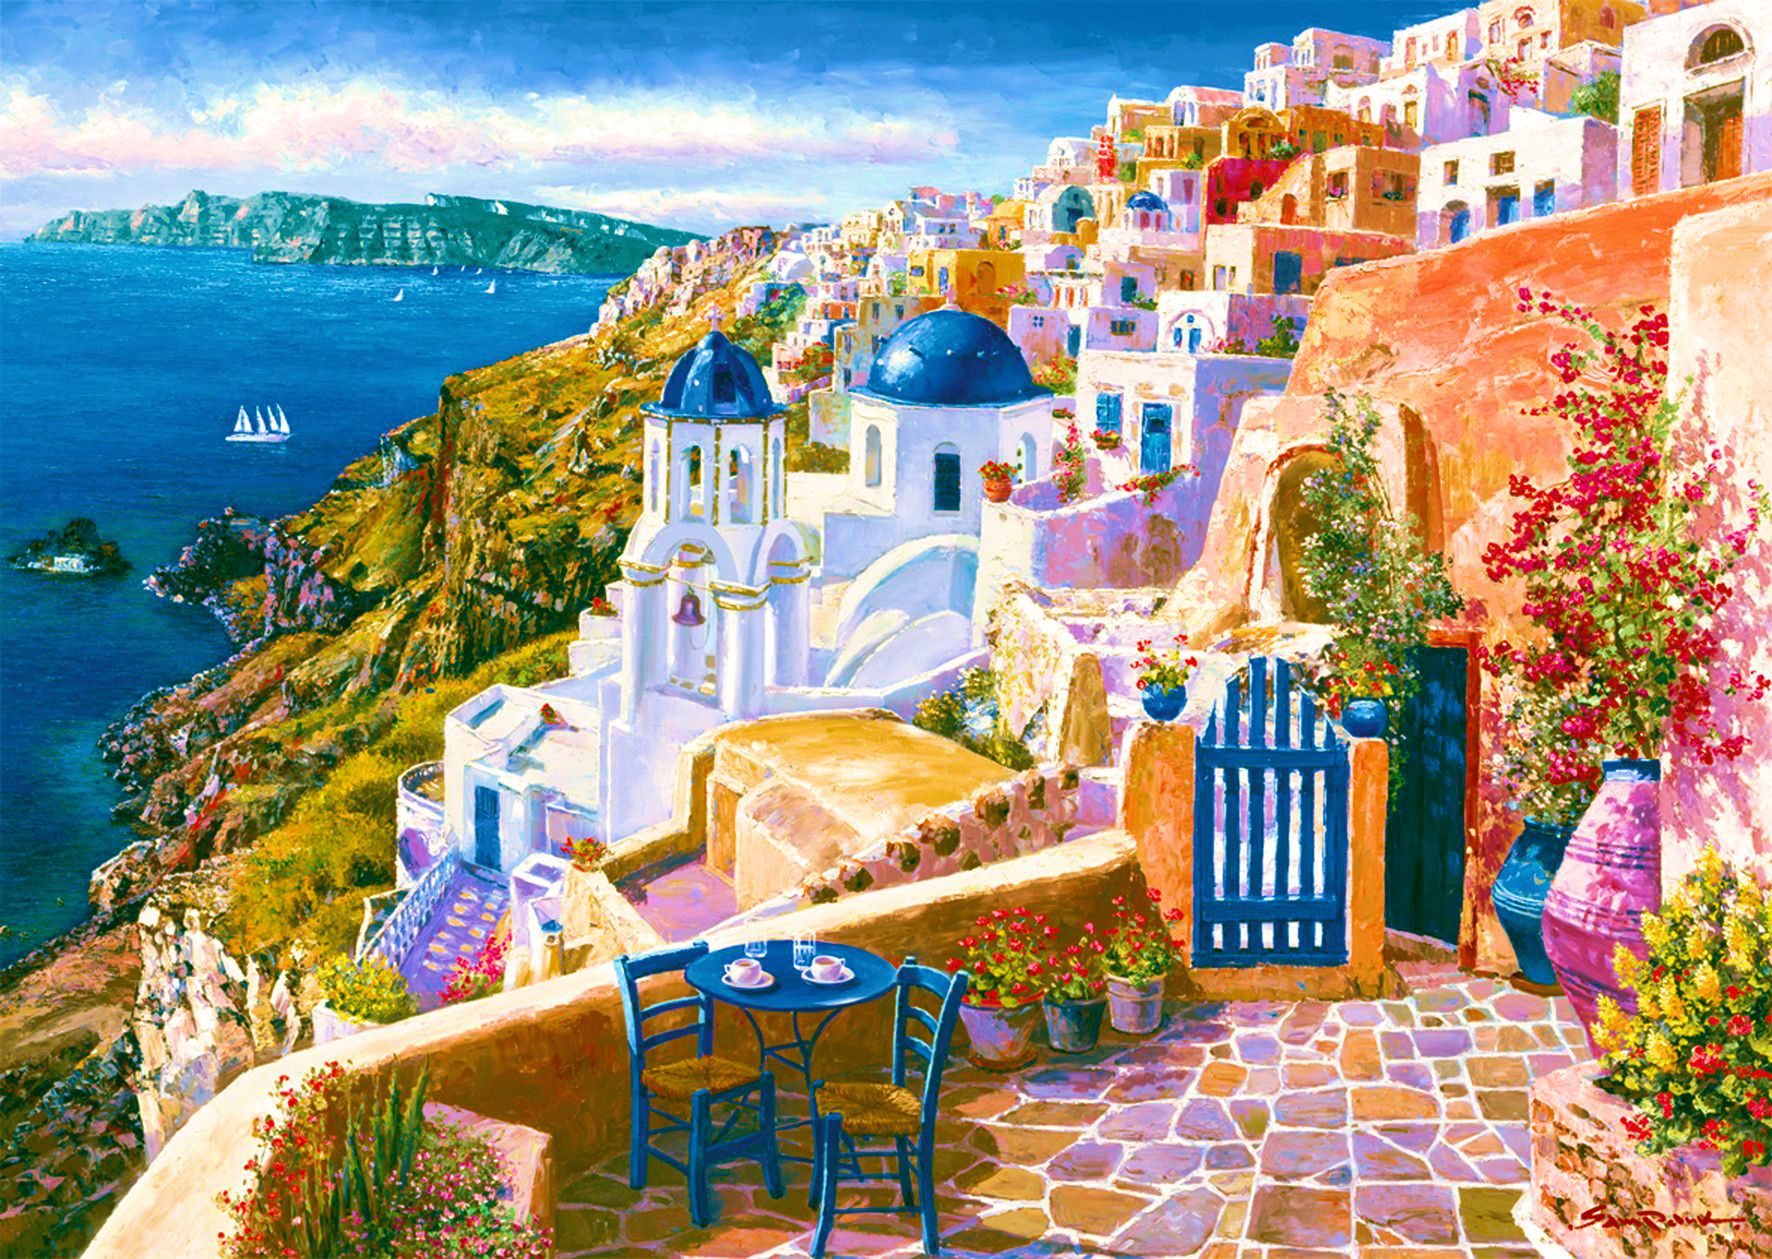 Скачать обои бесплатно Дом, Цвета, Картина, Греция, Санторини, Художественные картинка на рабочий стол ПК